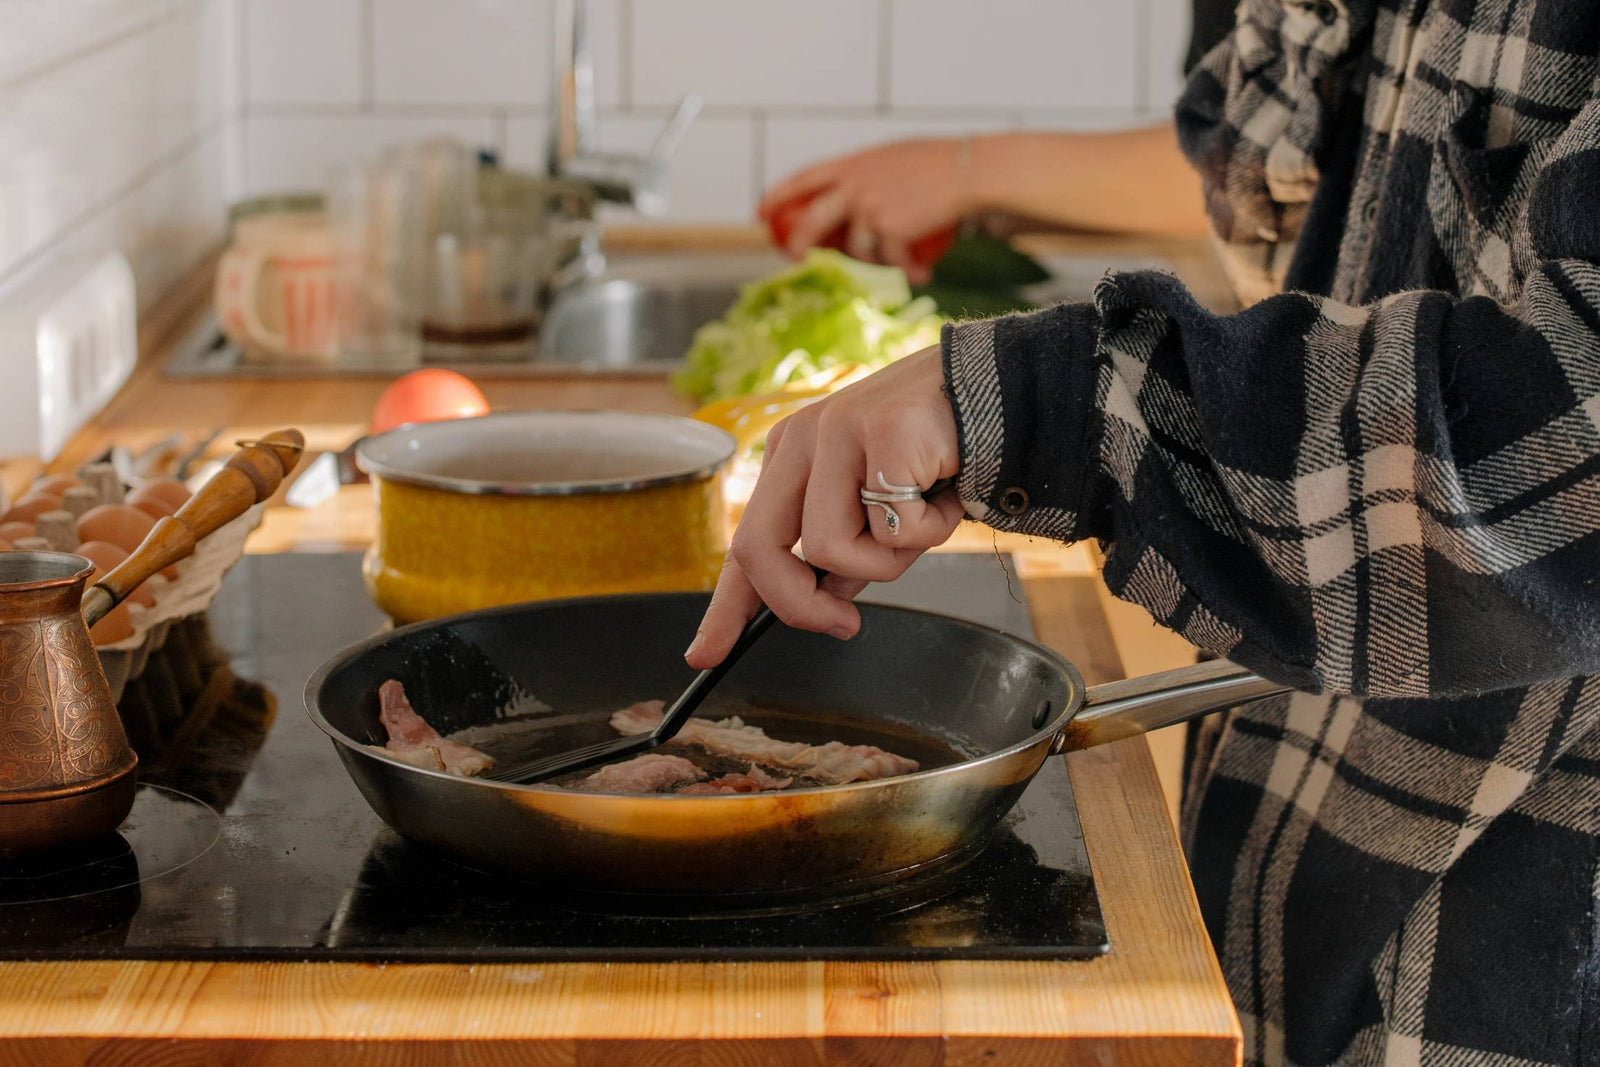 Poêle wok en aluminium avec couvercle en verre 20 cm Elo Smart life